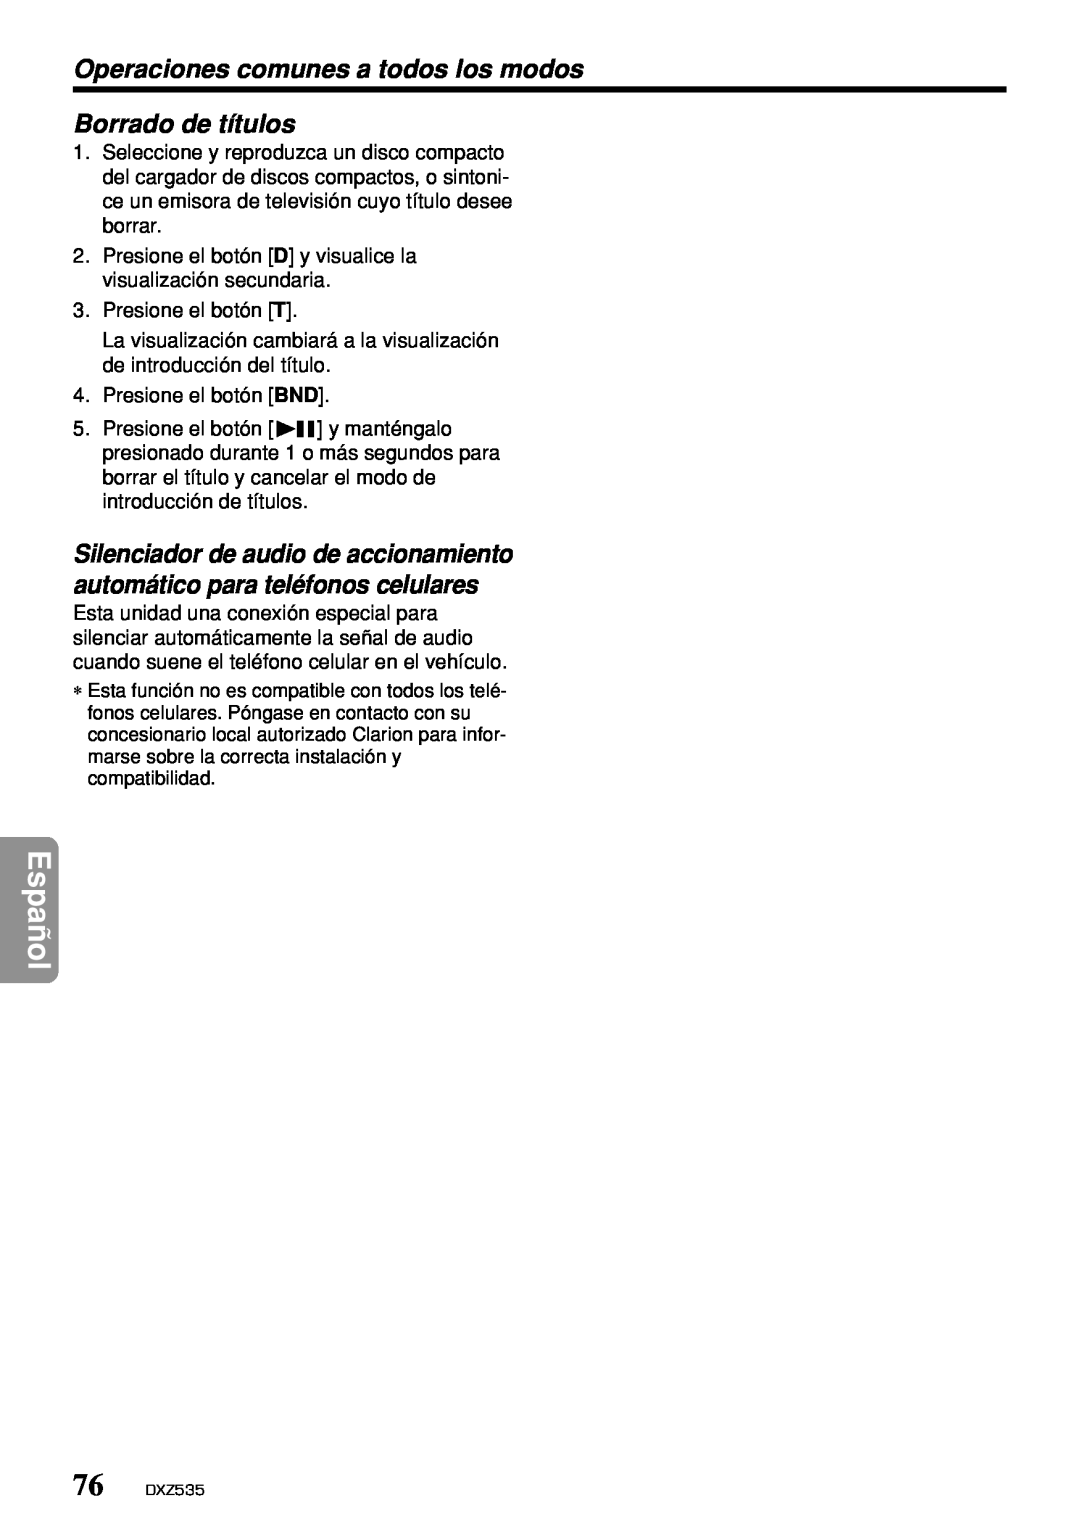 Clarion DXZ535 owner manual Borrado de títulos, Español, Operaciones comunes a todos los modos 